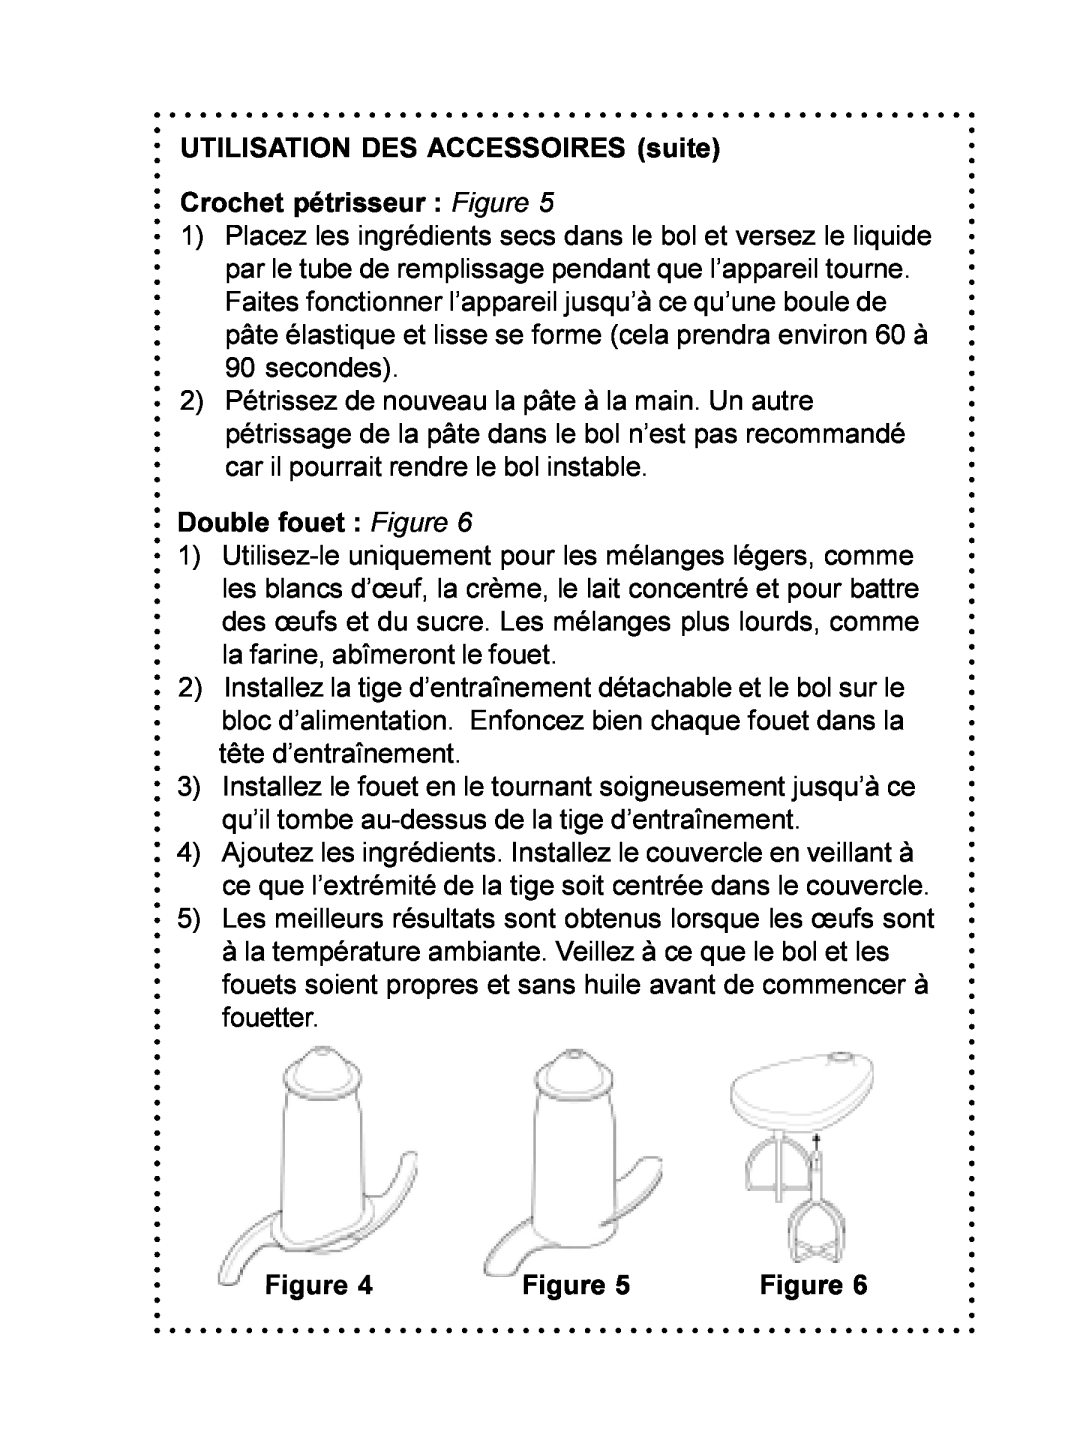 DeLonghi DFP690 Series instruction manual UTILISATION DES ACCESSOIRES suite, Crochet pétrisseur Figure, Double fouet Figure 